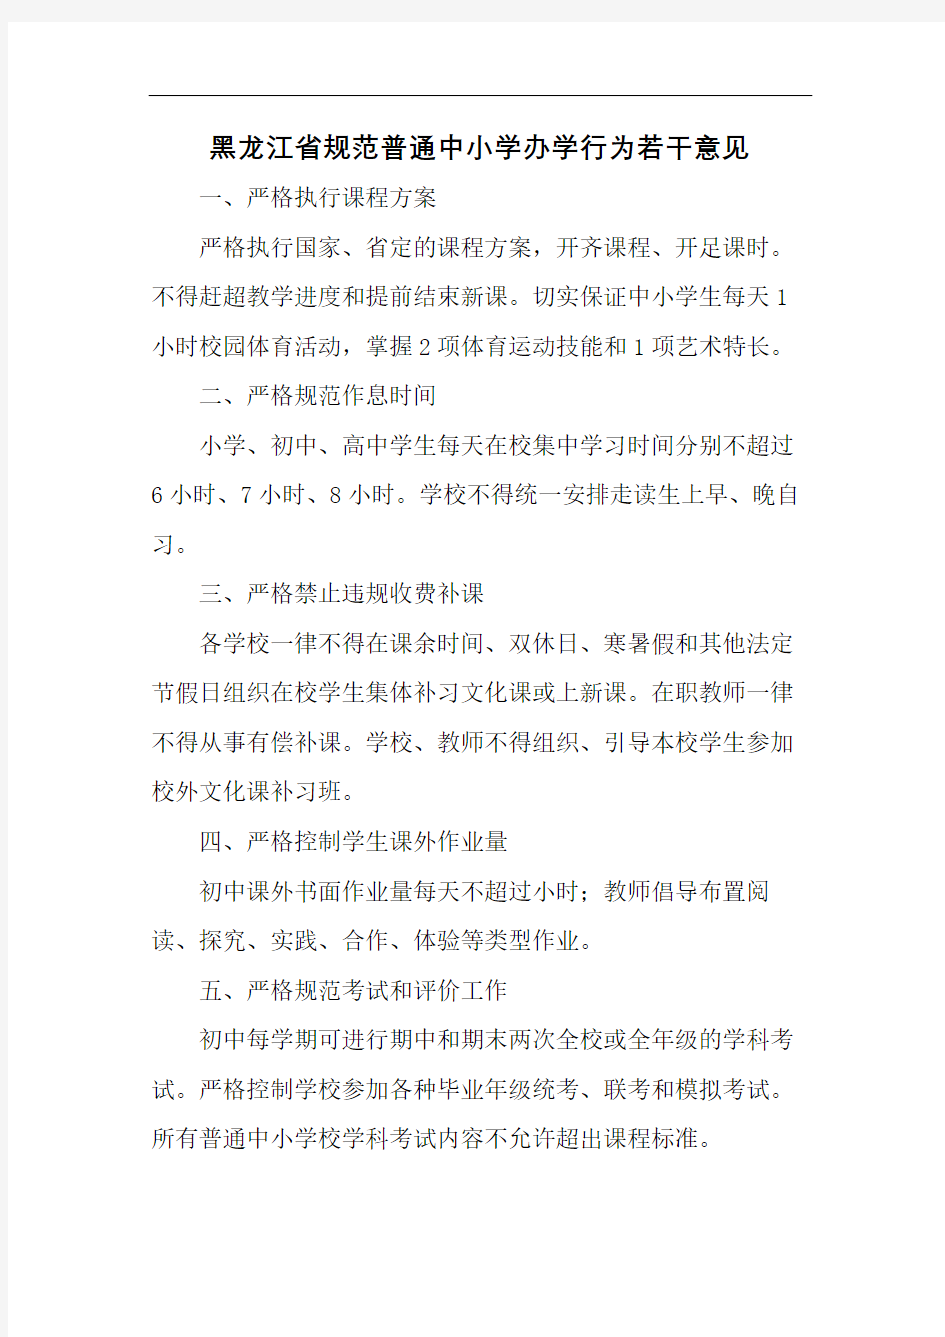 黑龙江省规范普通中小学办学行为若干意见